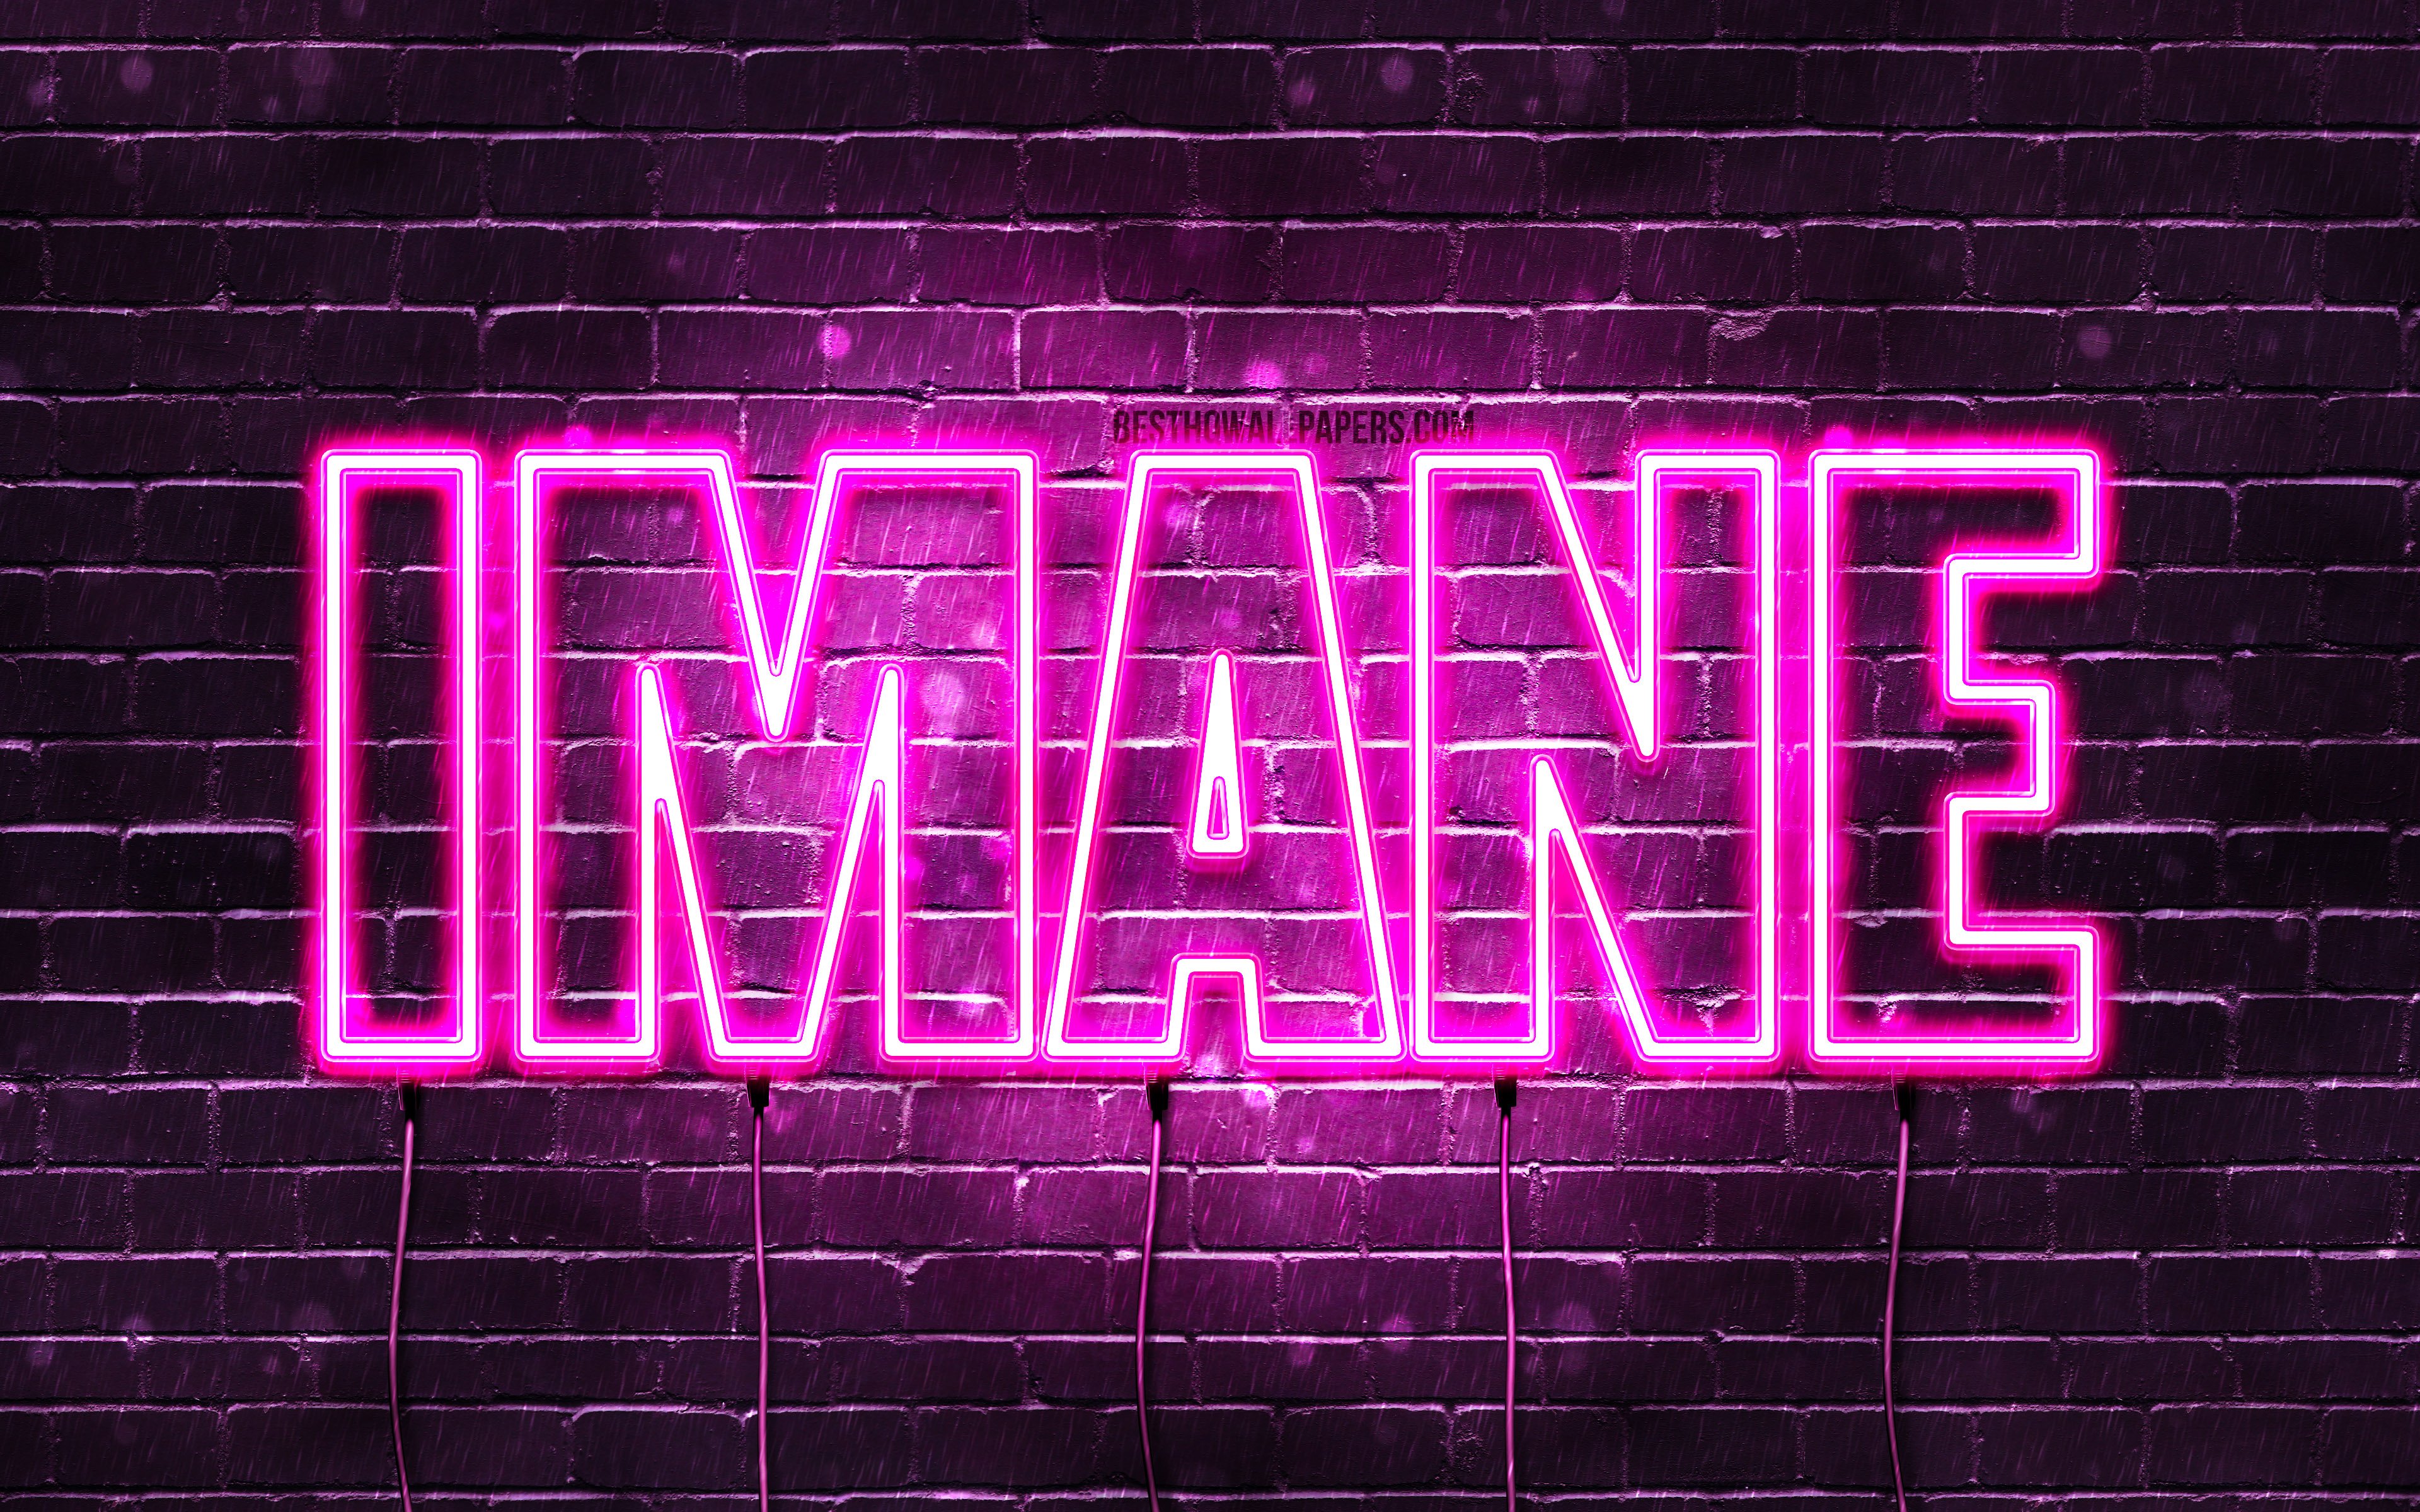 Descargar Fondos De Pantalla Imane 4k Fonds D Ecran Avec Des Noms Noms Feminins Nom Imane Neons Violets Joyeux Anniversaire Imane Noms Feminins Arabes Populaires Image Avec Nom Imane Monitor Con Una Resolucion